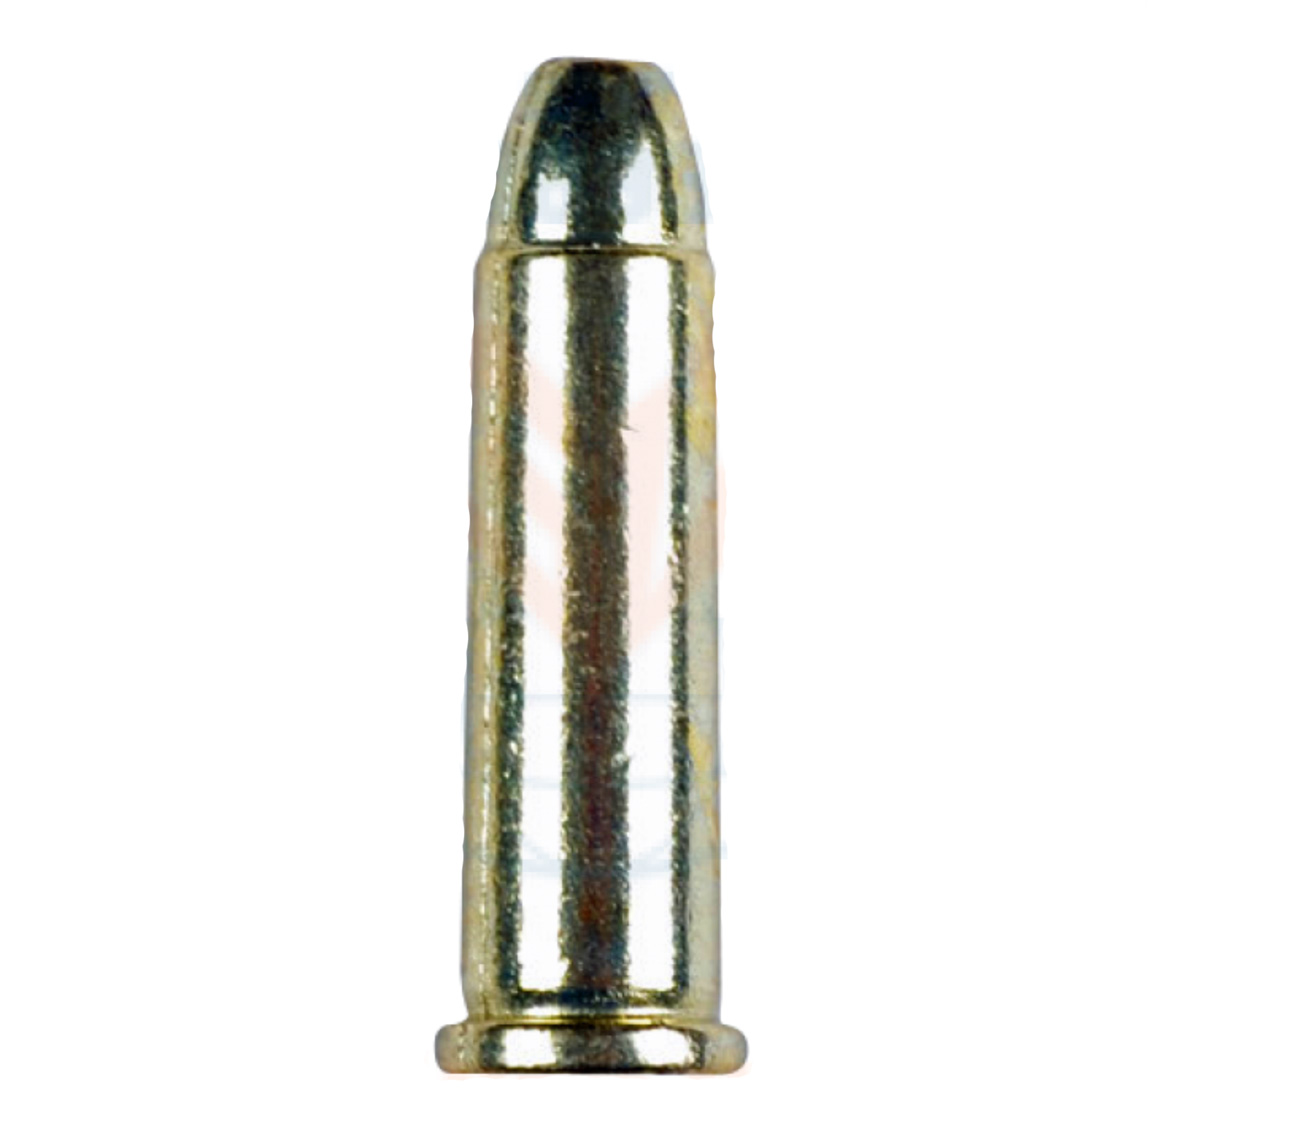 1 x 25 bullets for .45 Colt